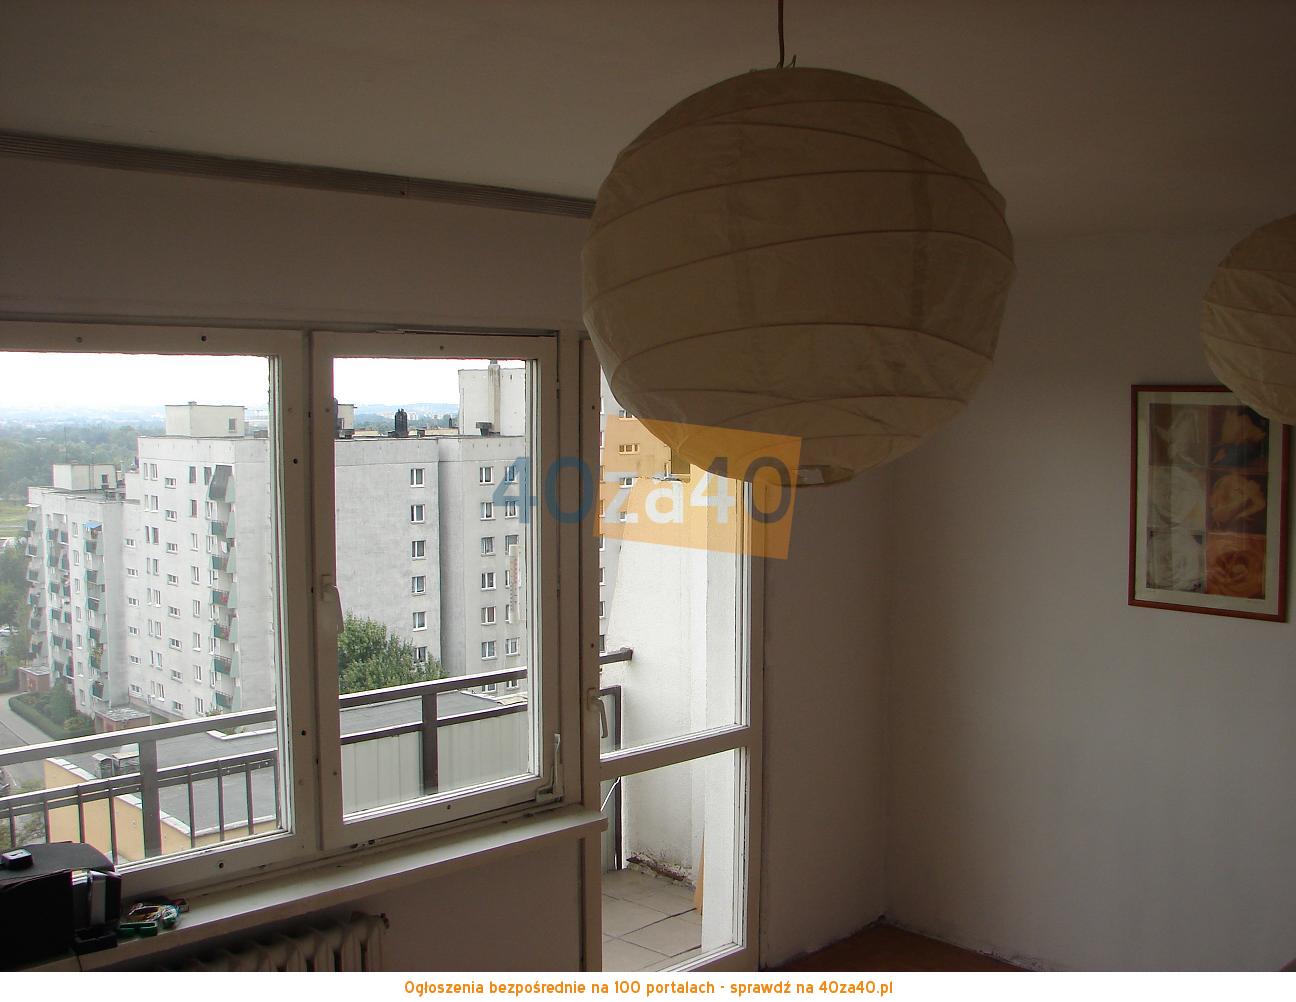 Mieszkanie do wynajęcia, pokoje: 1, cena: 700,00 PLN, Kraków, kontakt: 517200544